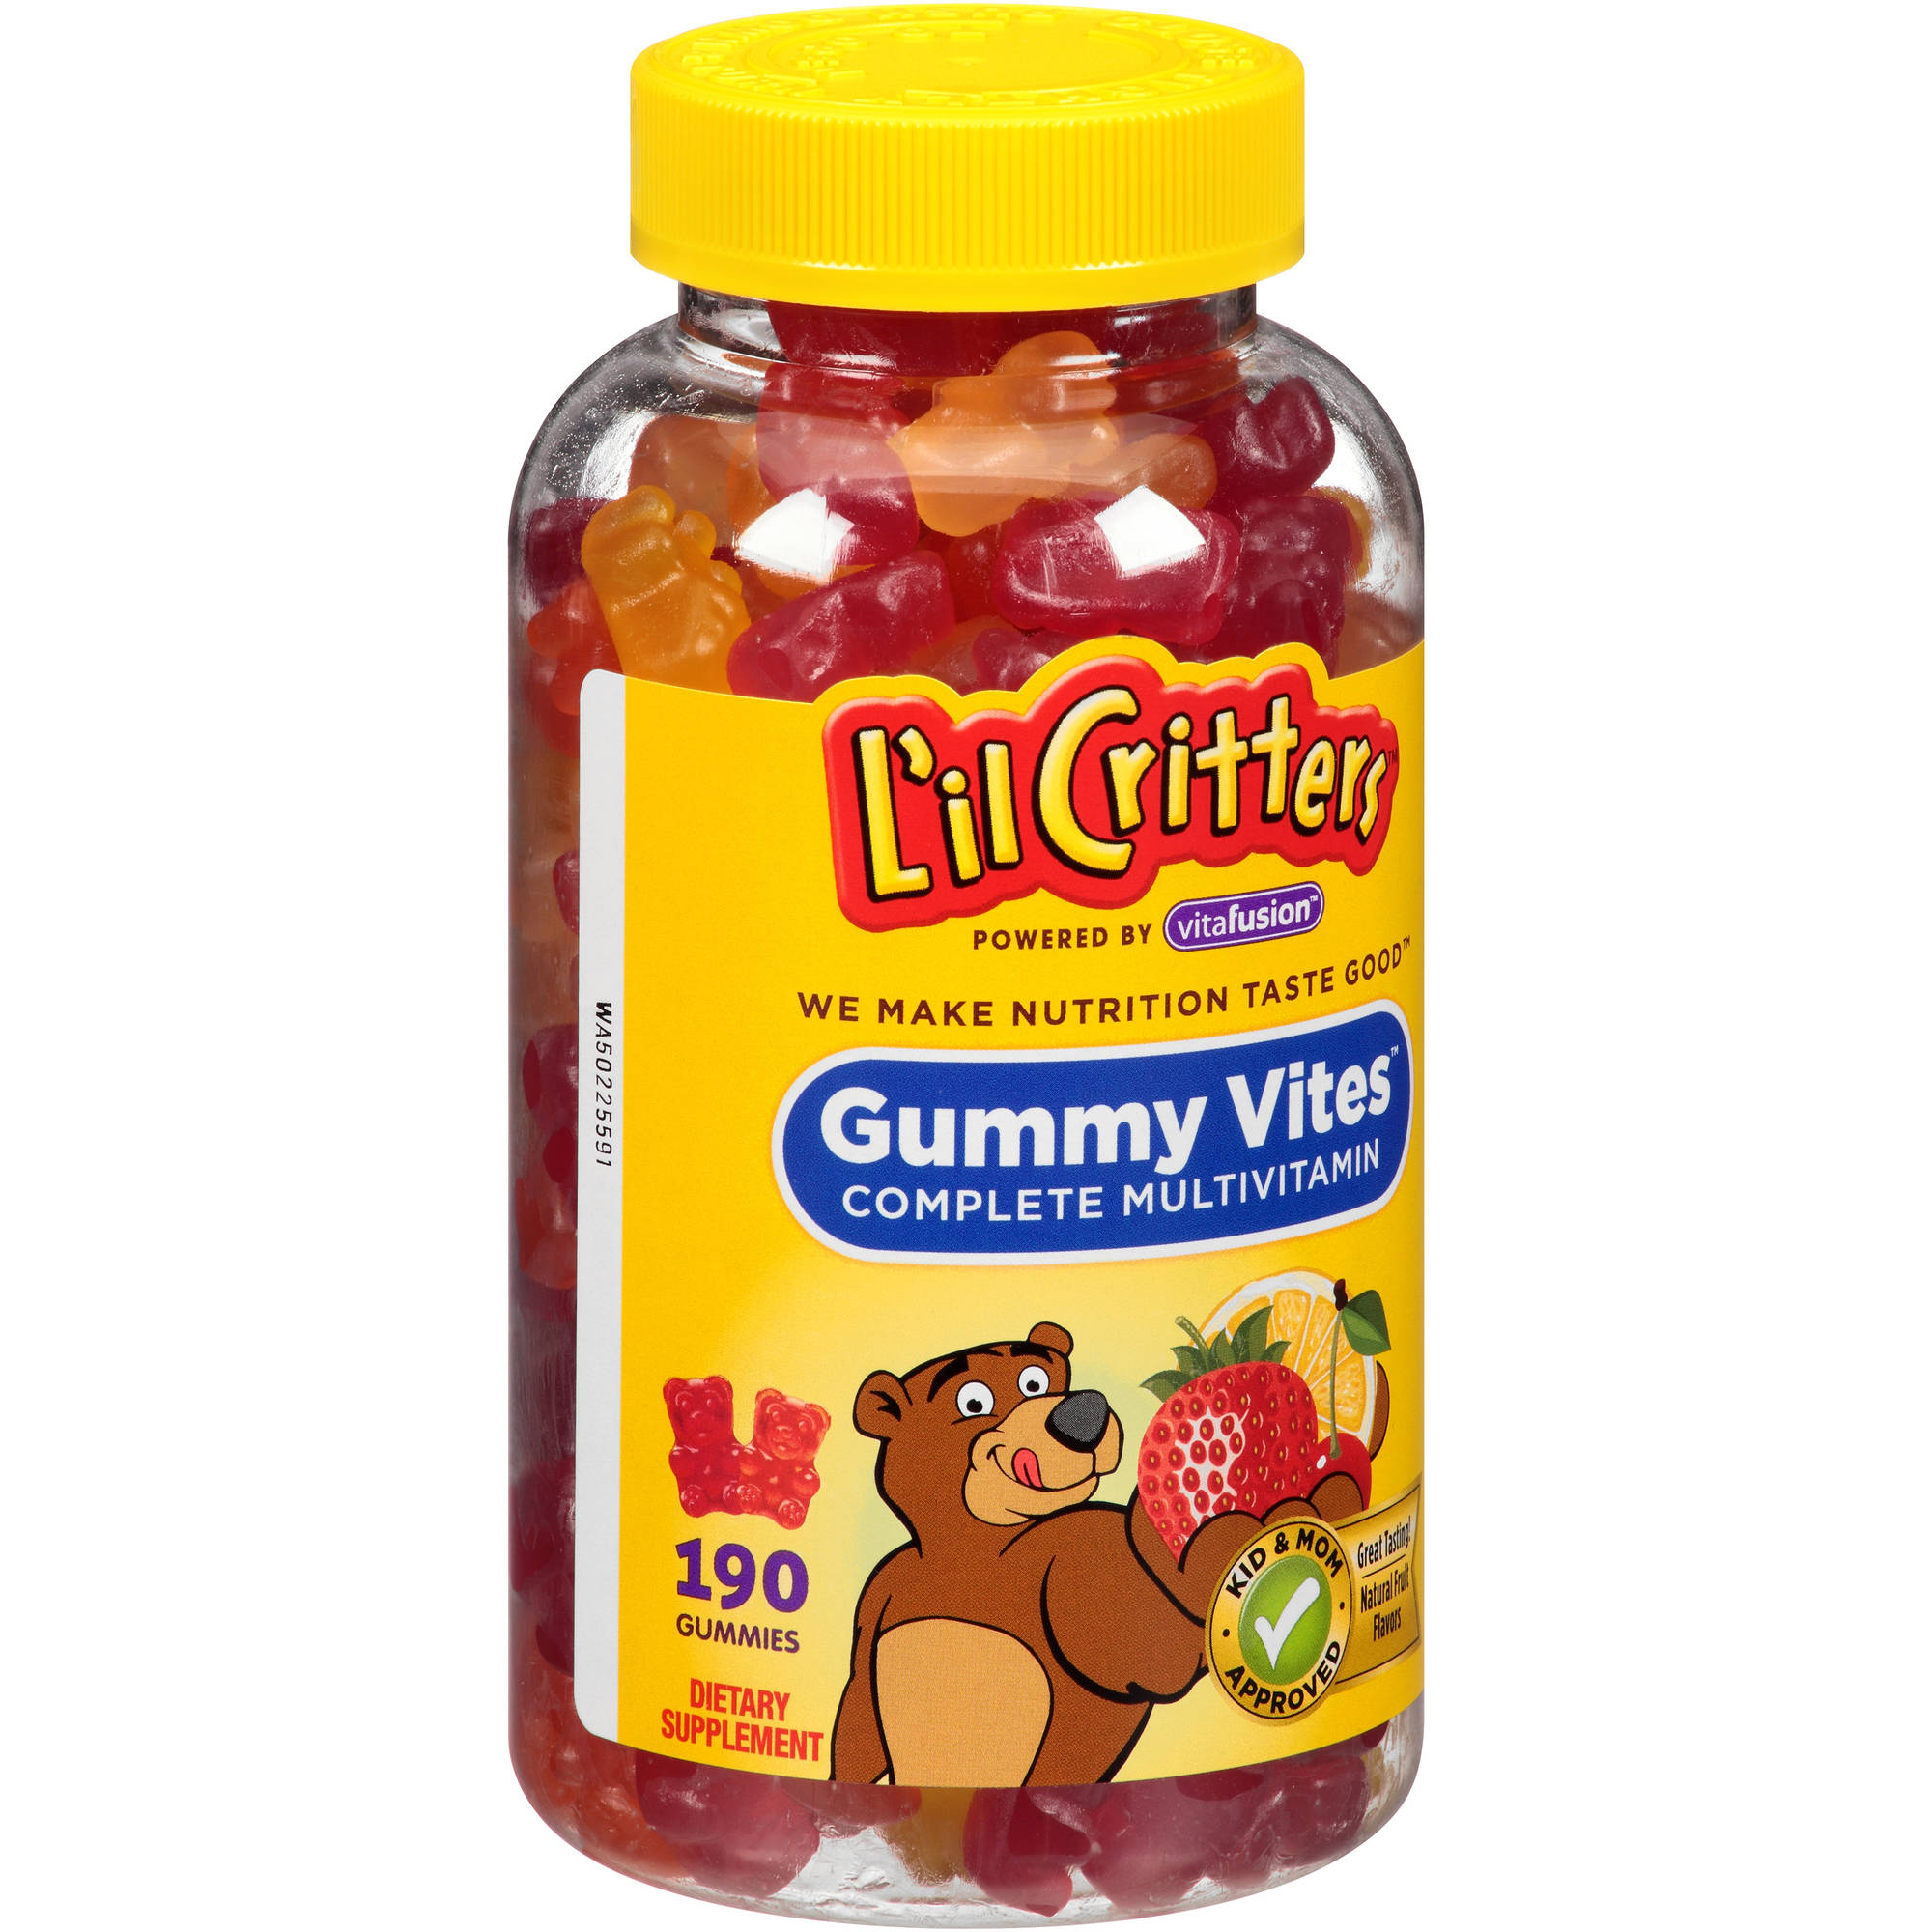 Жевательные мультивитамины для детей. Lil Critters витамины для детей Gummy vites. Американские витамины для детей. Витамины детские мишки. Витамины мишки для детей американские.